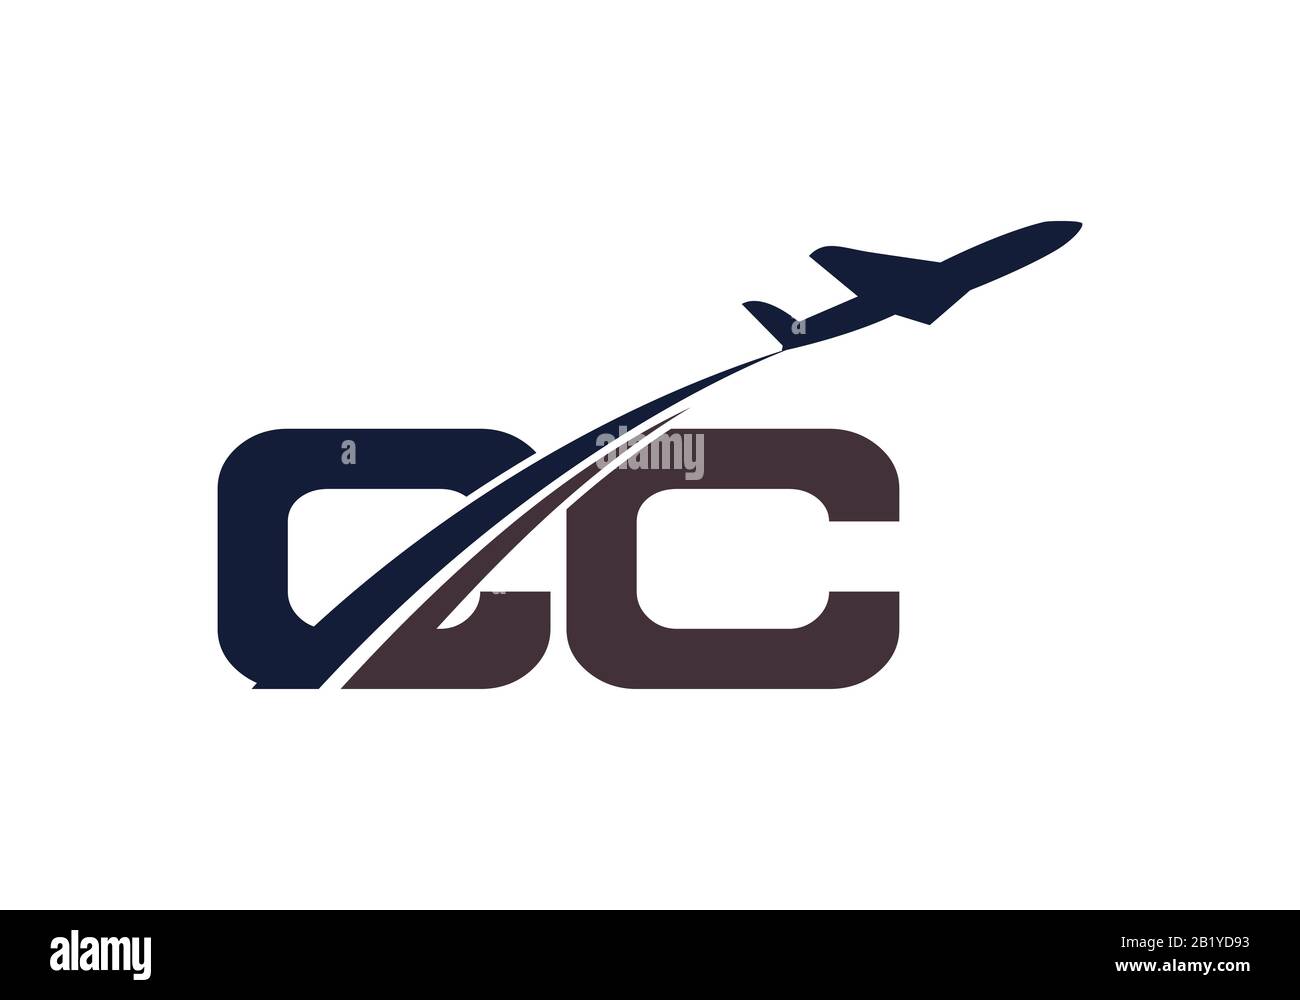 Lettera iniziale C e C con logo Aviation, modello Air, Airline, Airplane e Travel Logo. Illustrazione Vettoriale